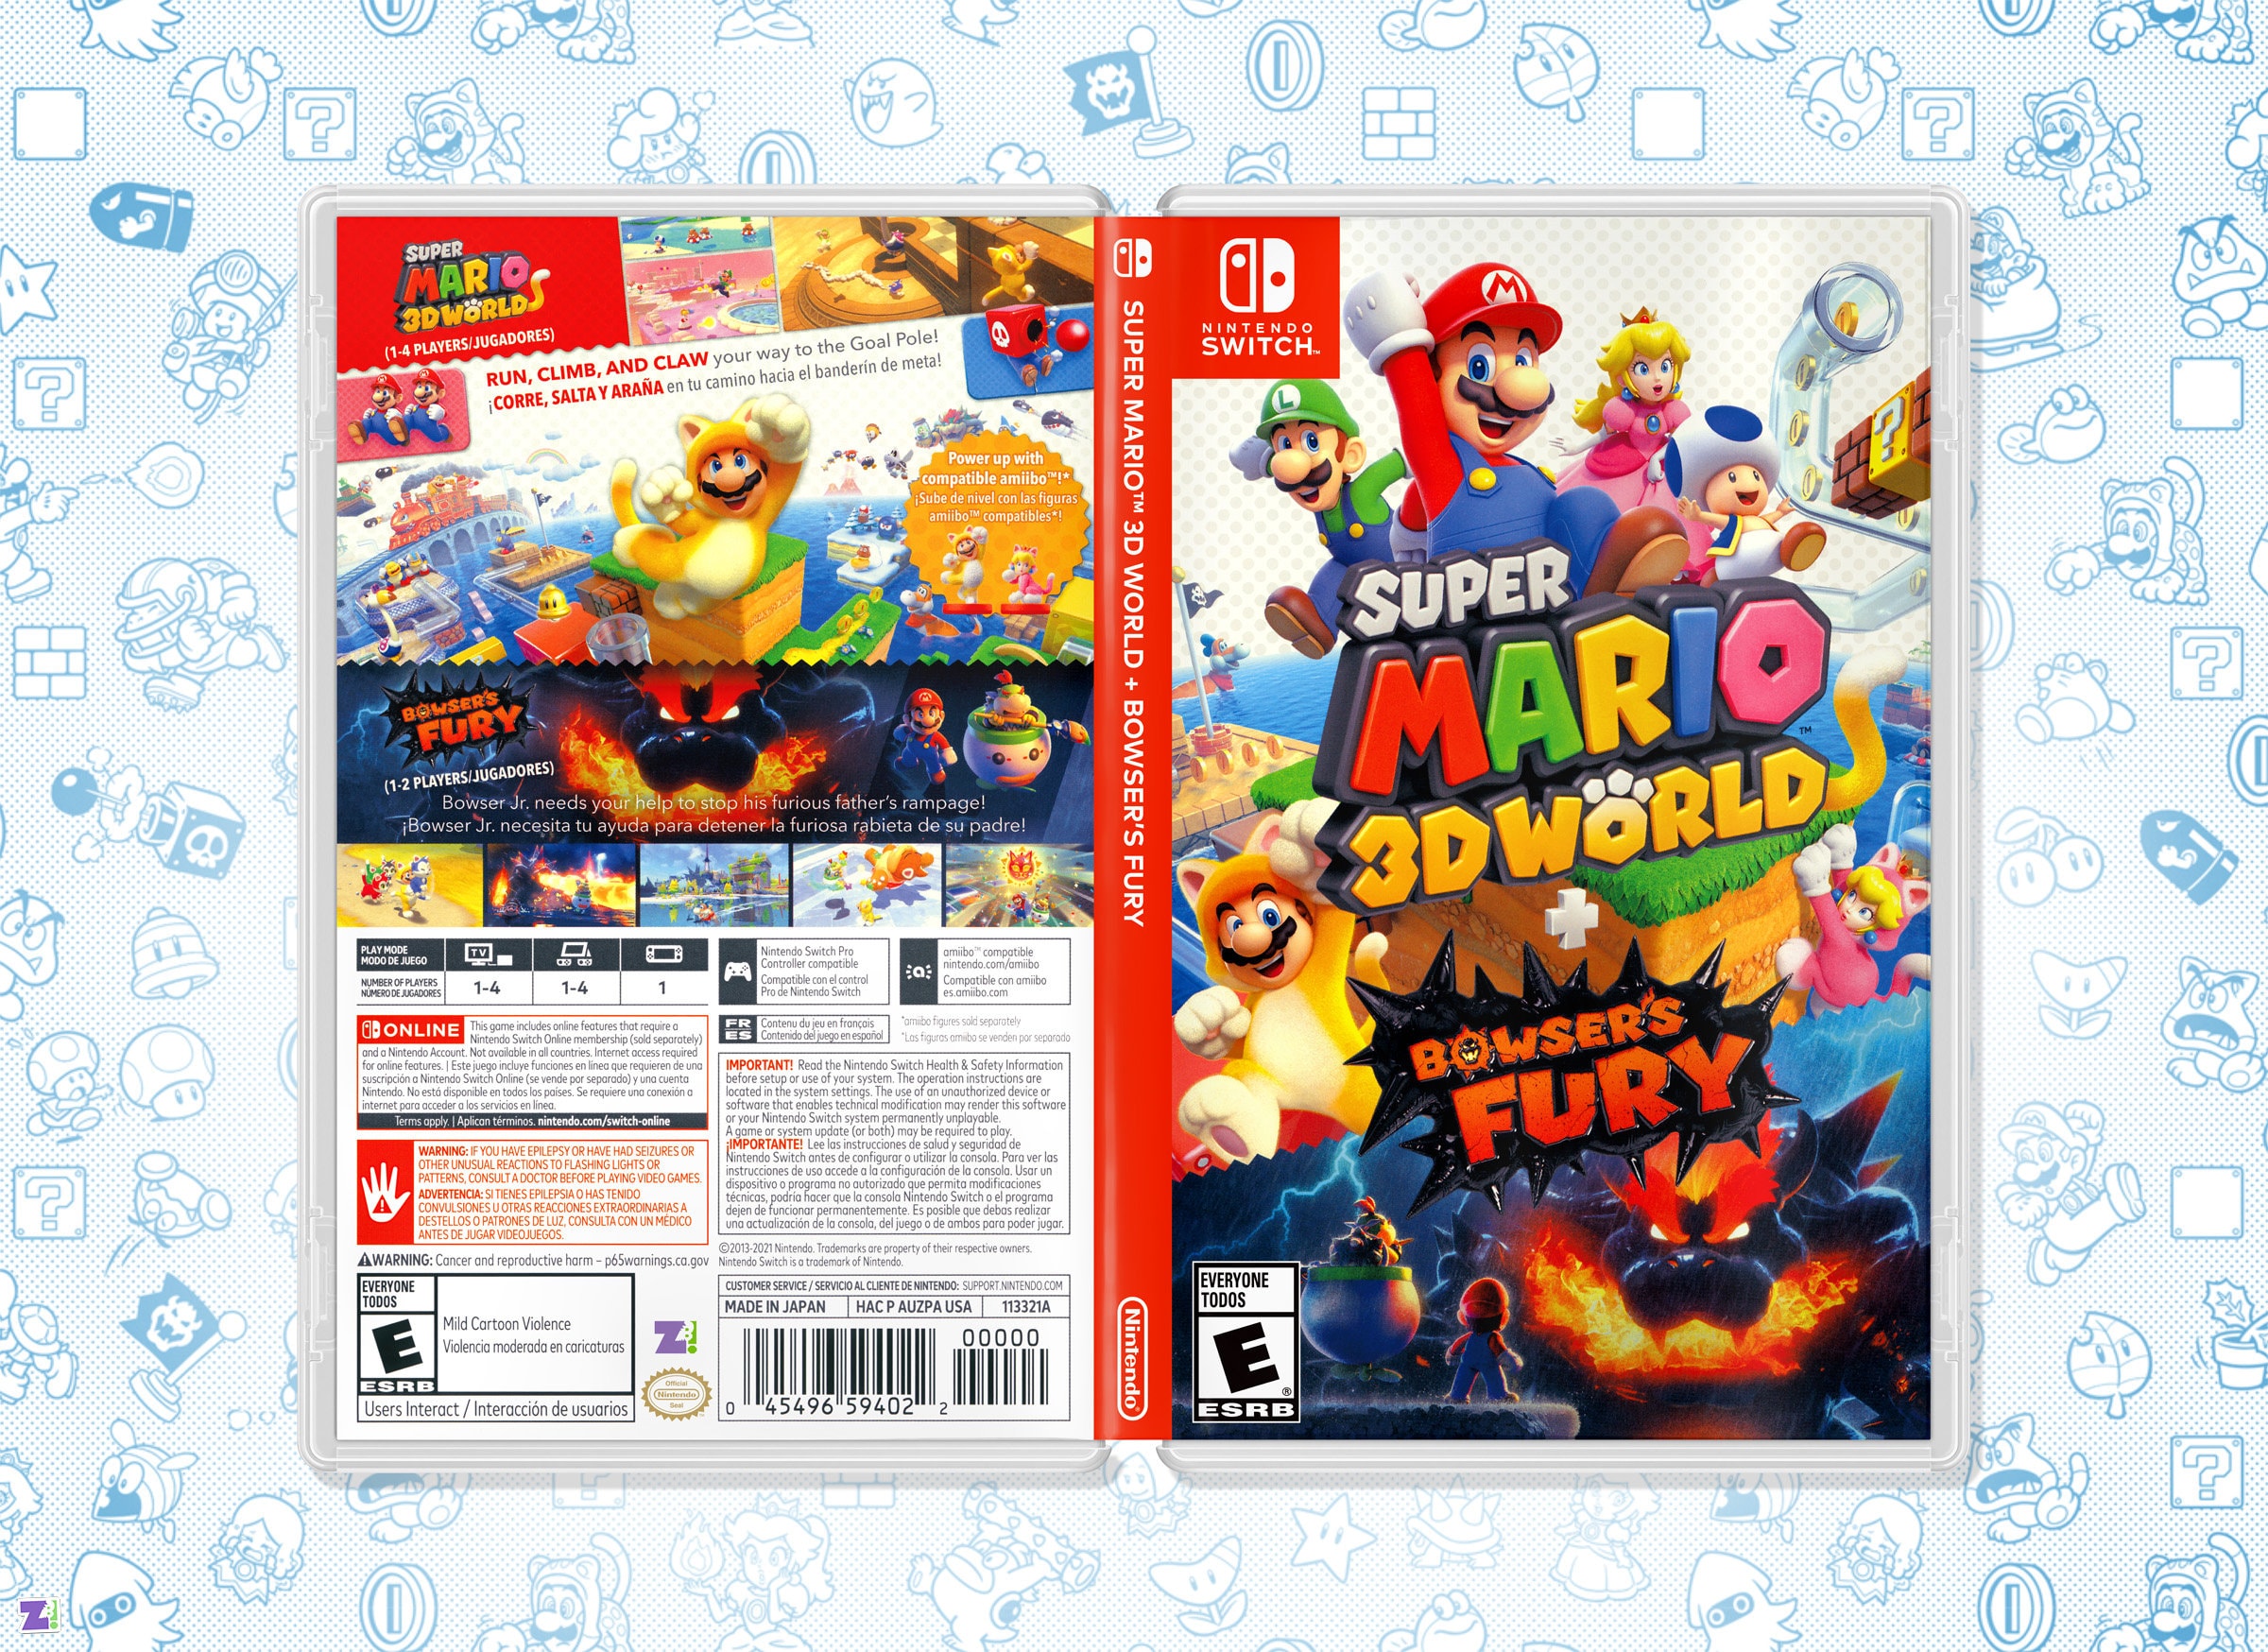 Super Mario 3D World Bowser's Fury Cover Art: Inserto e custodia di  ricambio per Nintendo Switch -  Italia